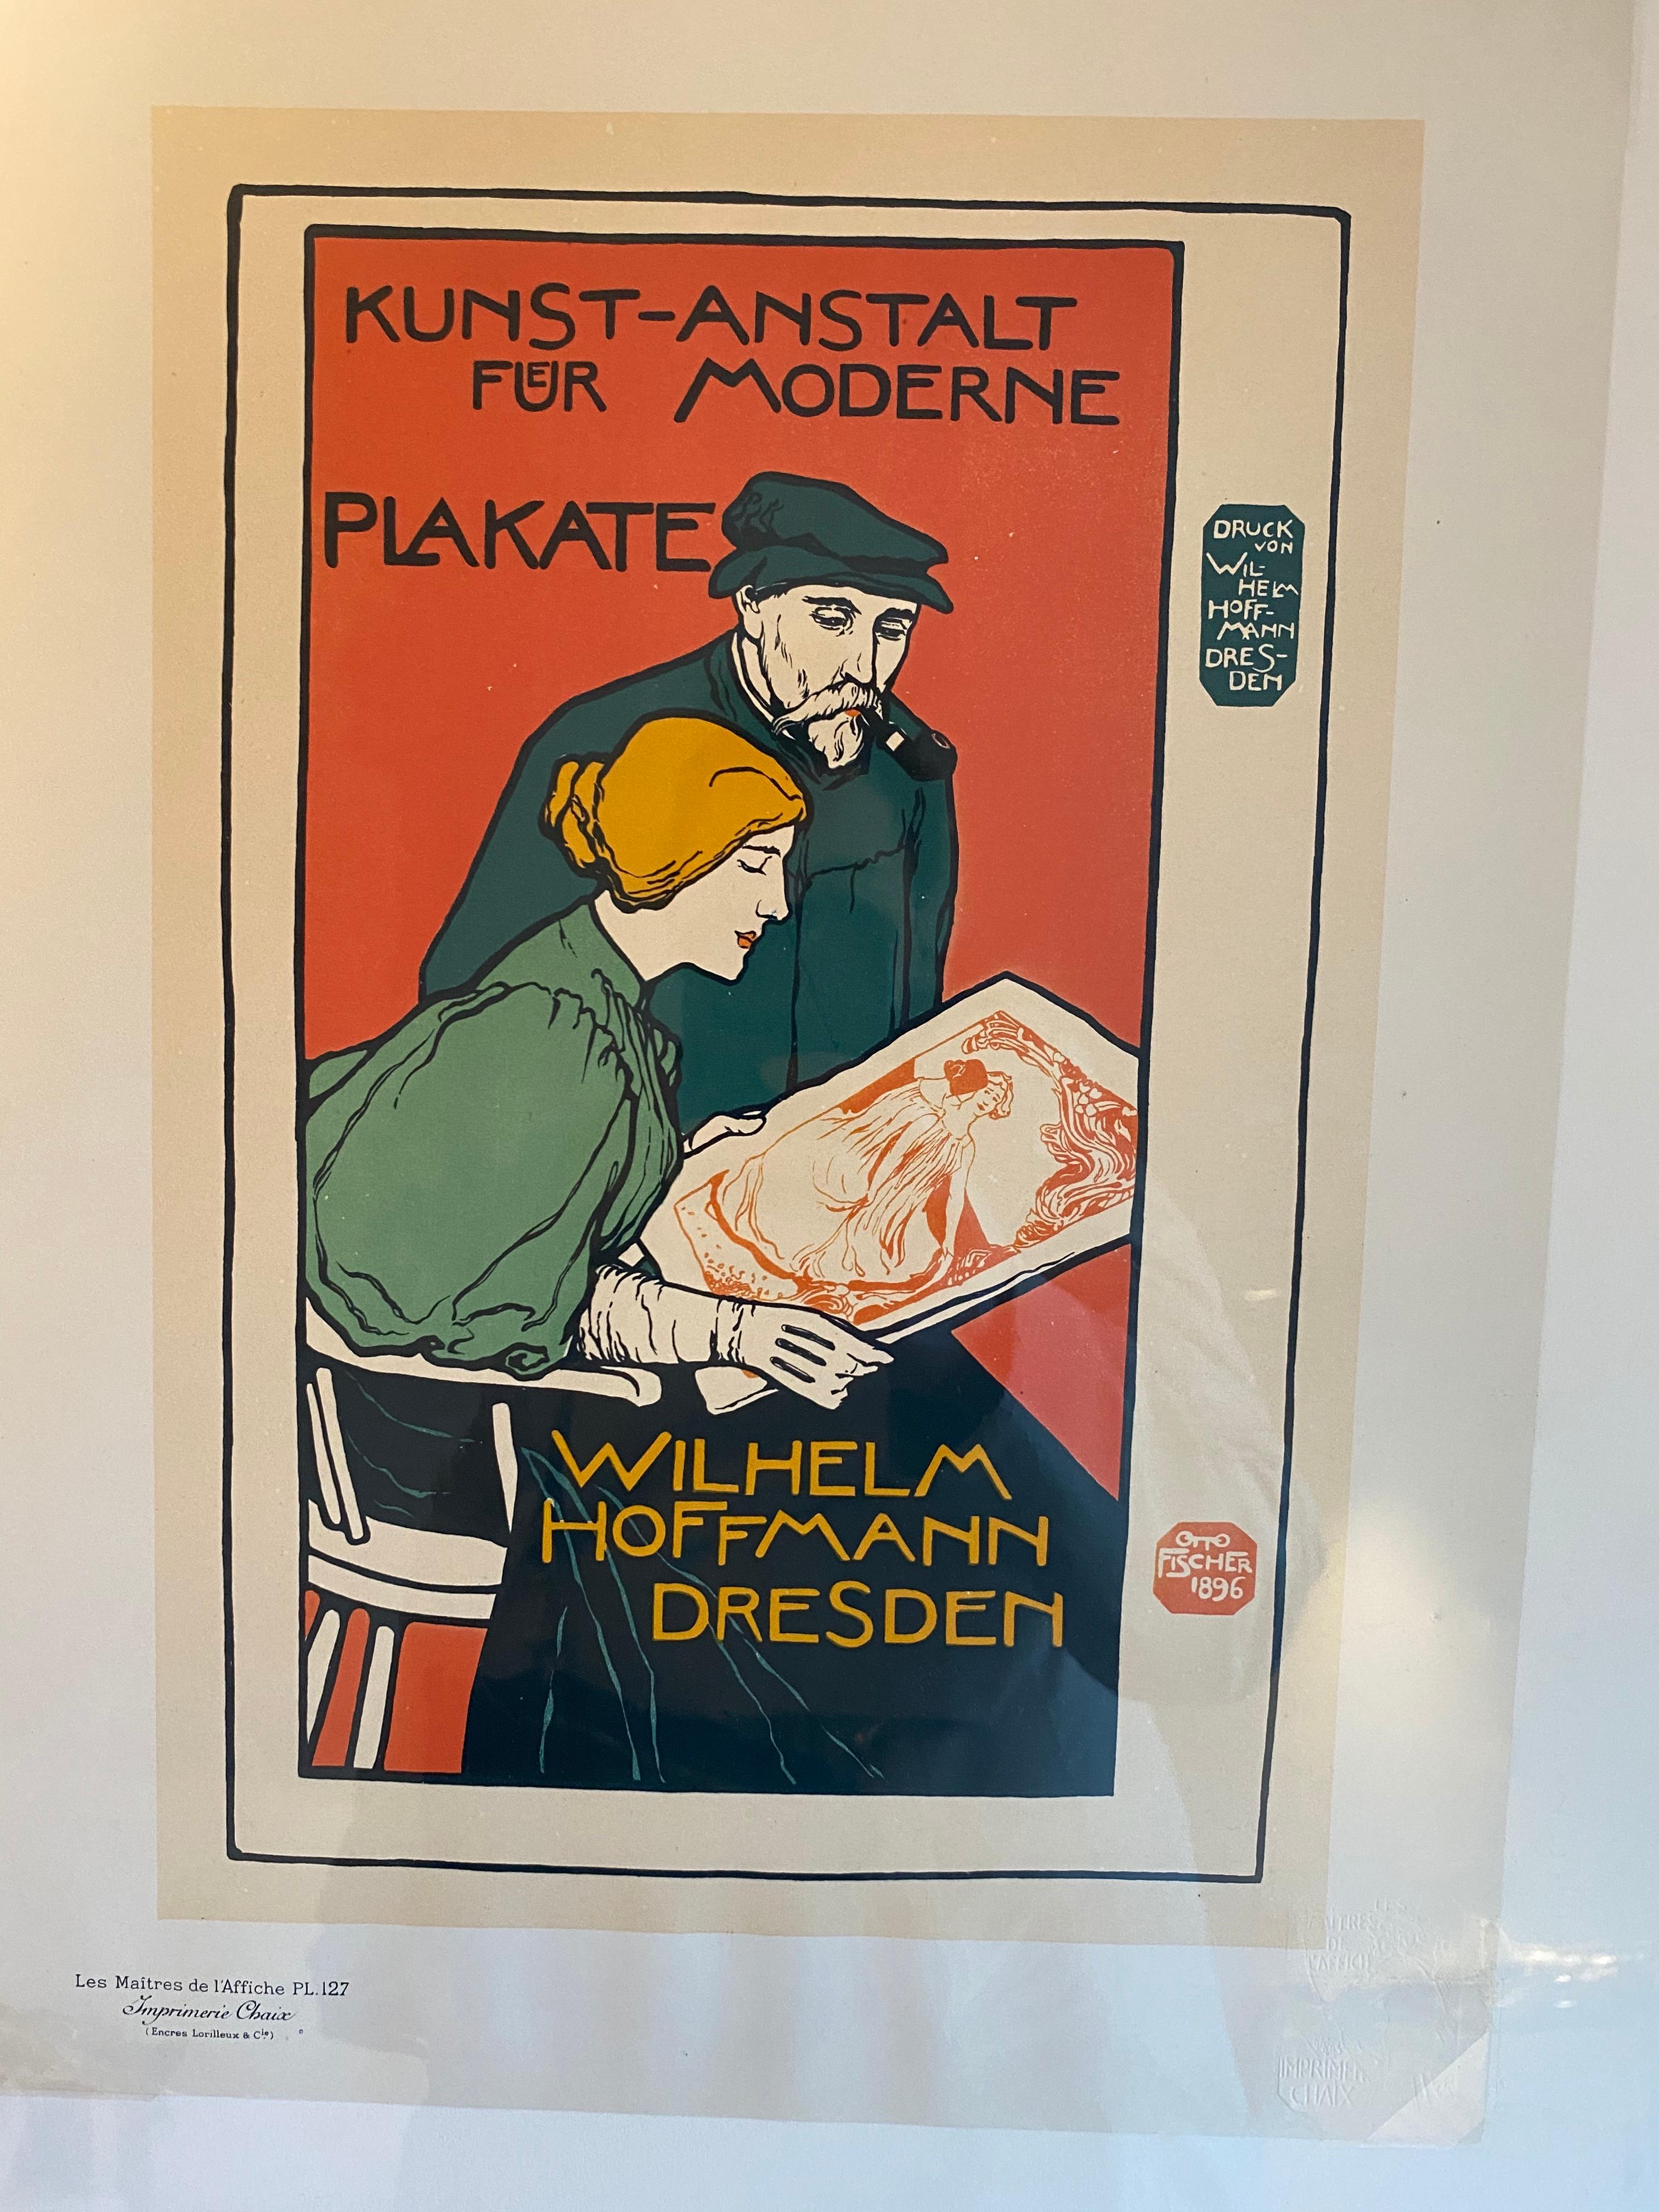 « Plakate moderne en fourrureKunst-Anstalt » de Les Maitres de l'Affiche - Print de Anton Otto Fischer